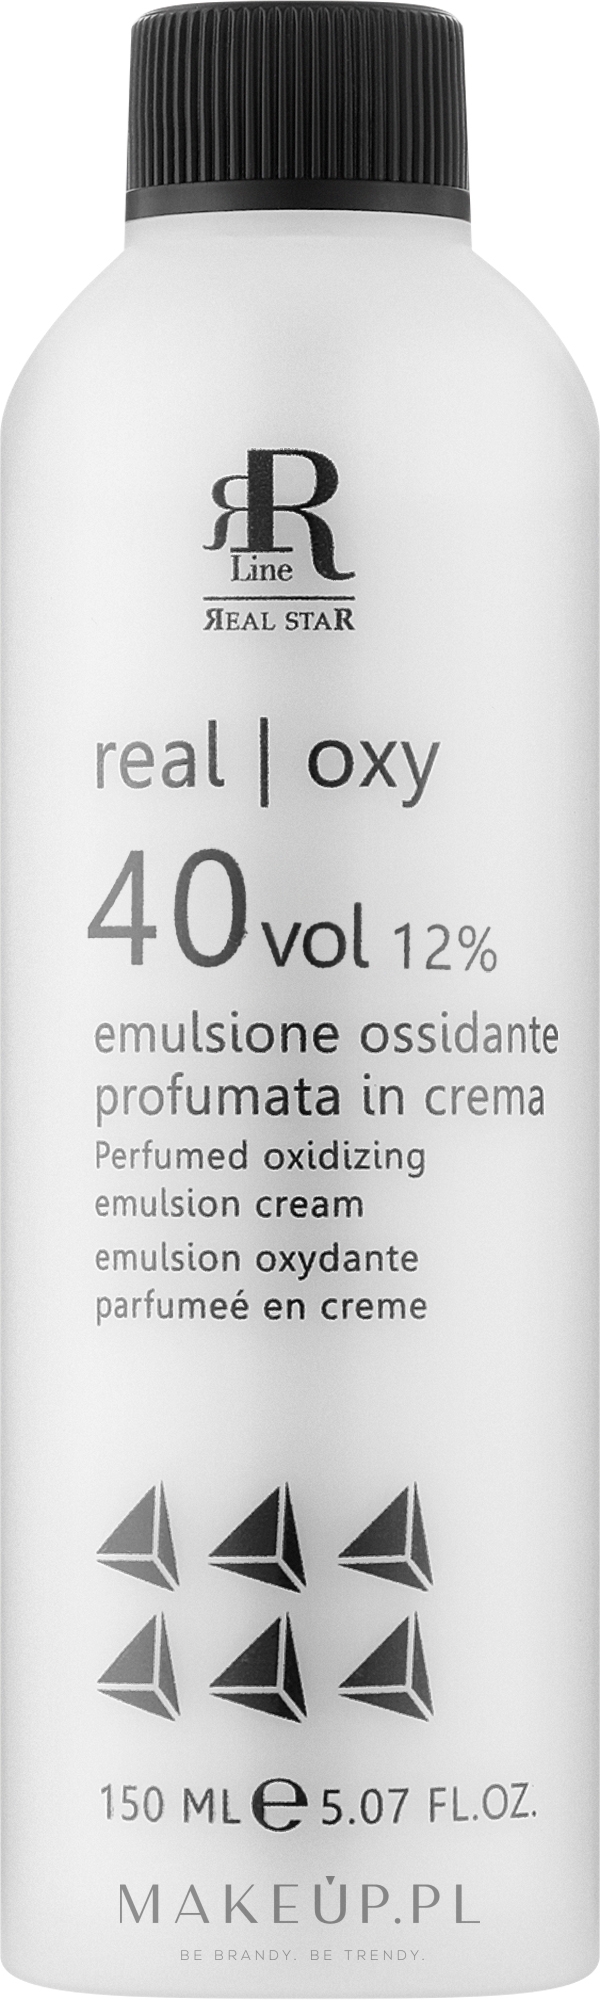 Perfumowana emulsja utleniająca 12% - RR Line Parfymed Oxidizing Emulsion Cream  — Zdjęcie 150 ml